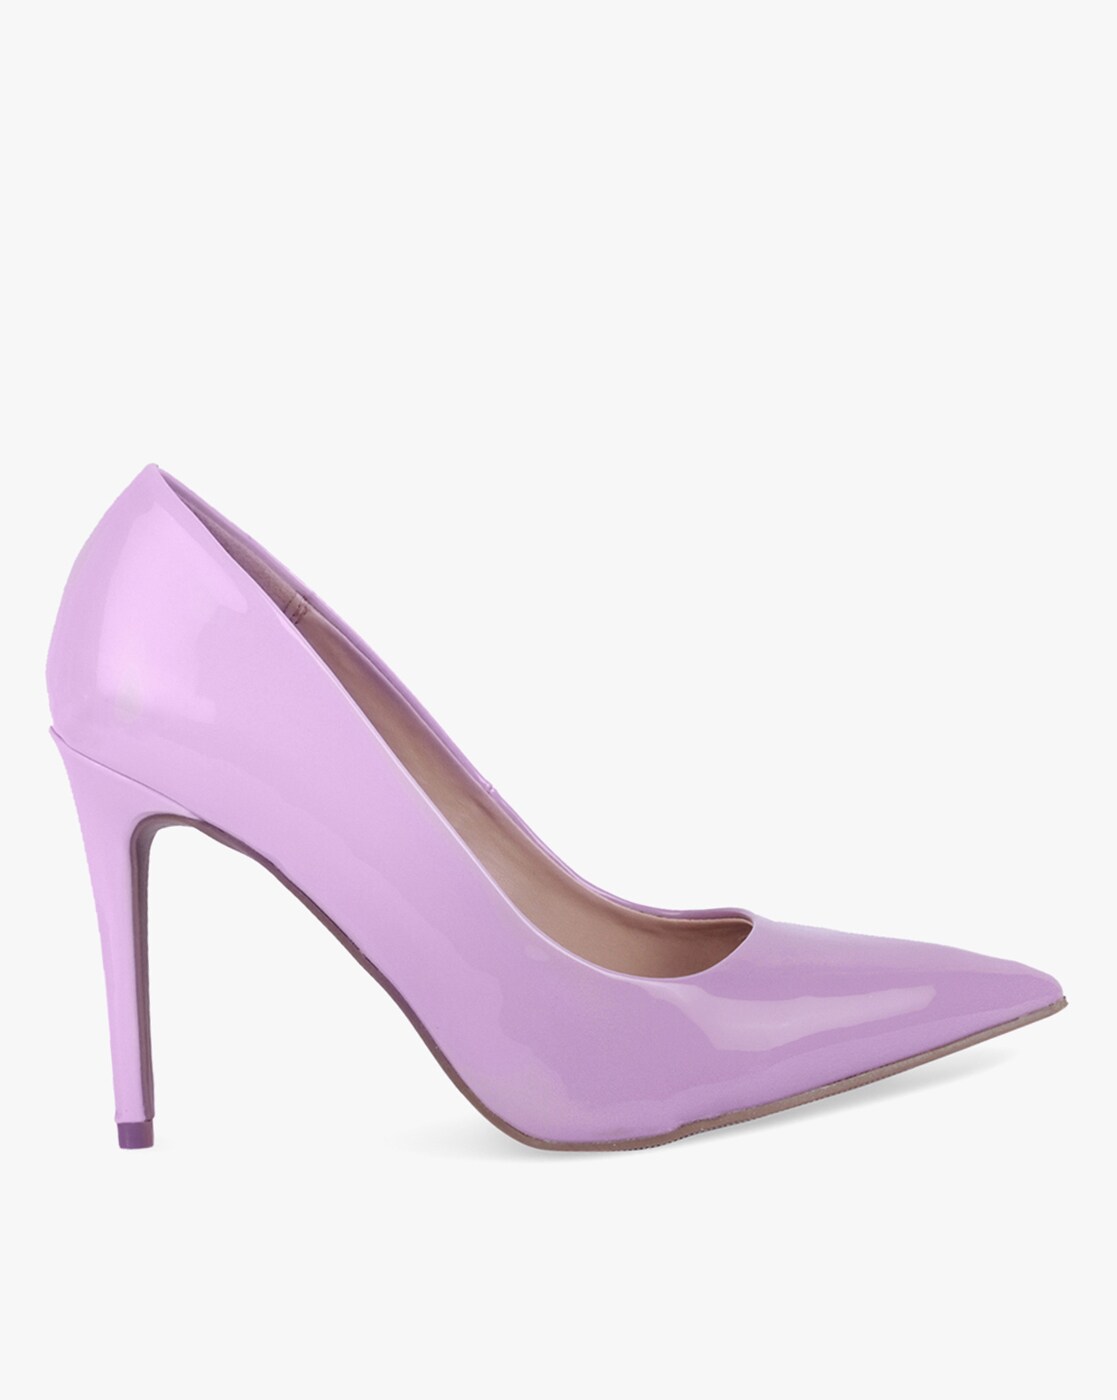 lilac pumps shoes